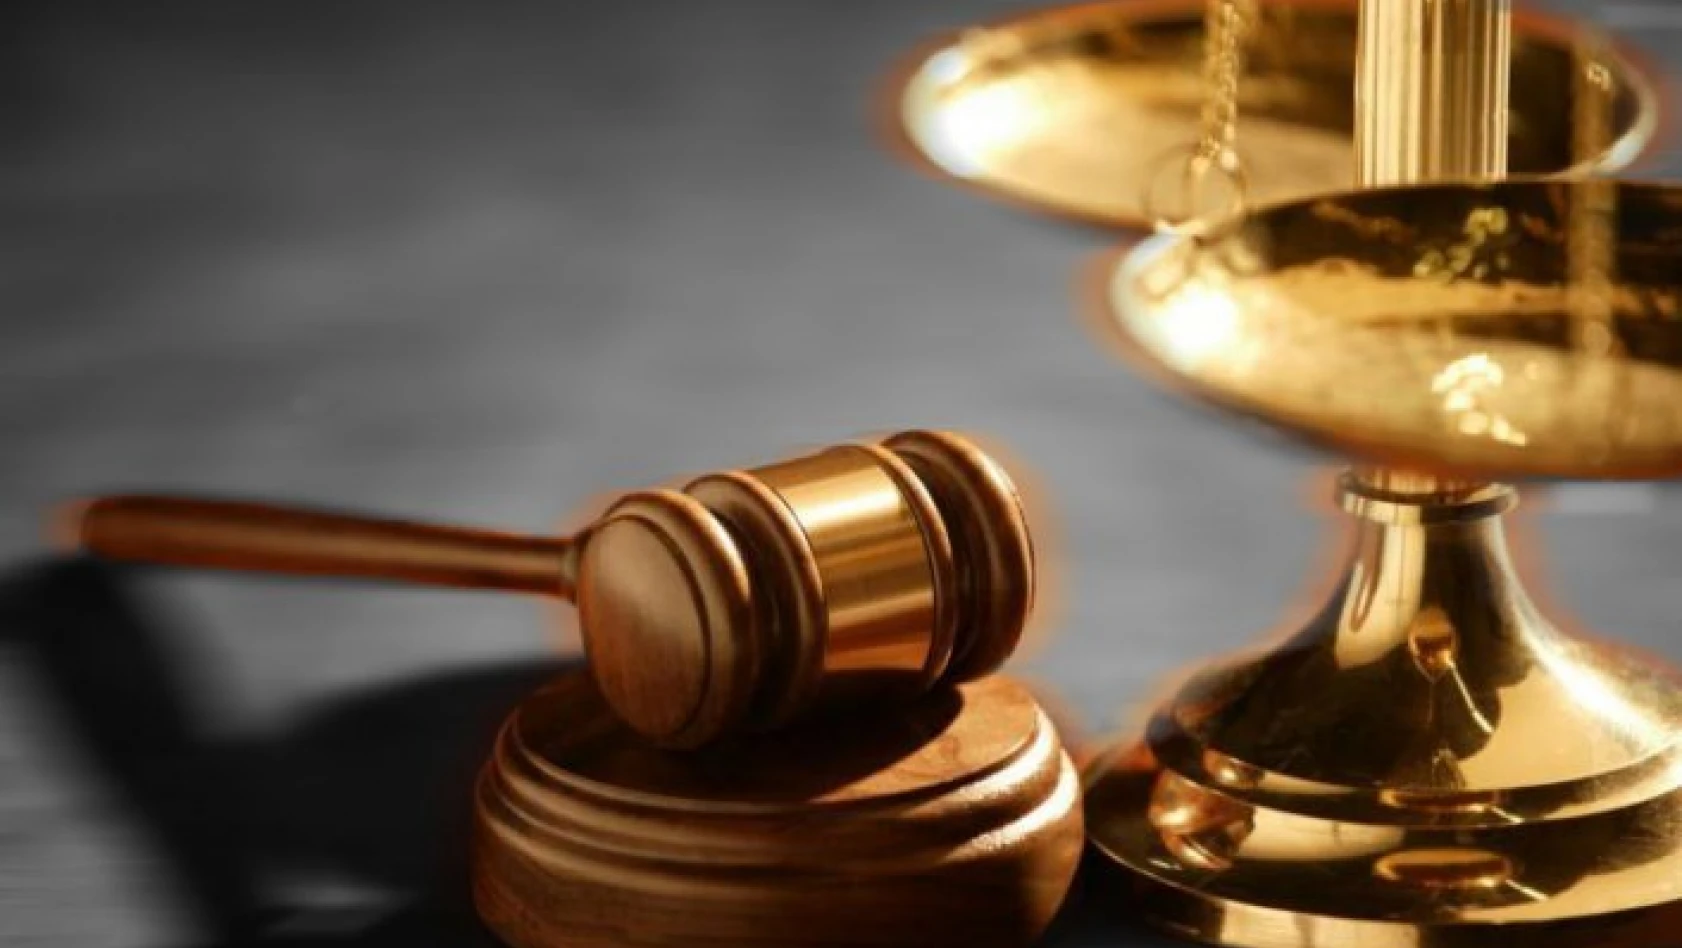 Kastamonu'daki FETÖ davasında 7 sanıktan 6'sı beraat etti